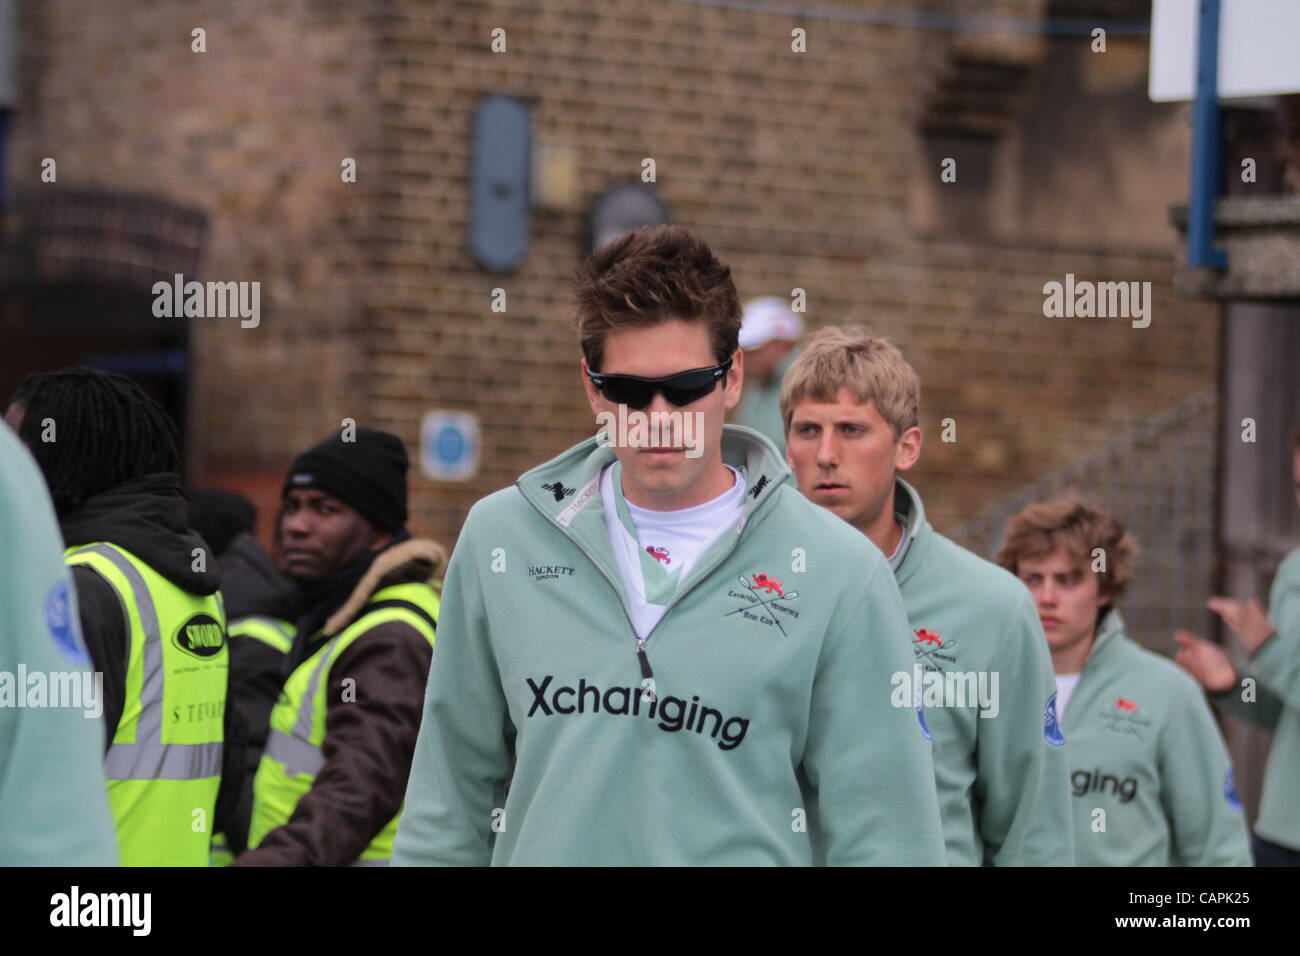 London, UK, samedi 7 avril 2012. L'équipe d'aviron de Cambridge (photo) à l'Université de Cambridge et Oxford Xchanging Boat Race sur la Tamise. Banque D'Images